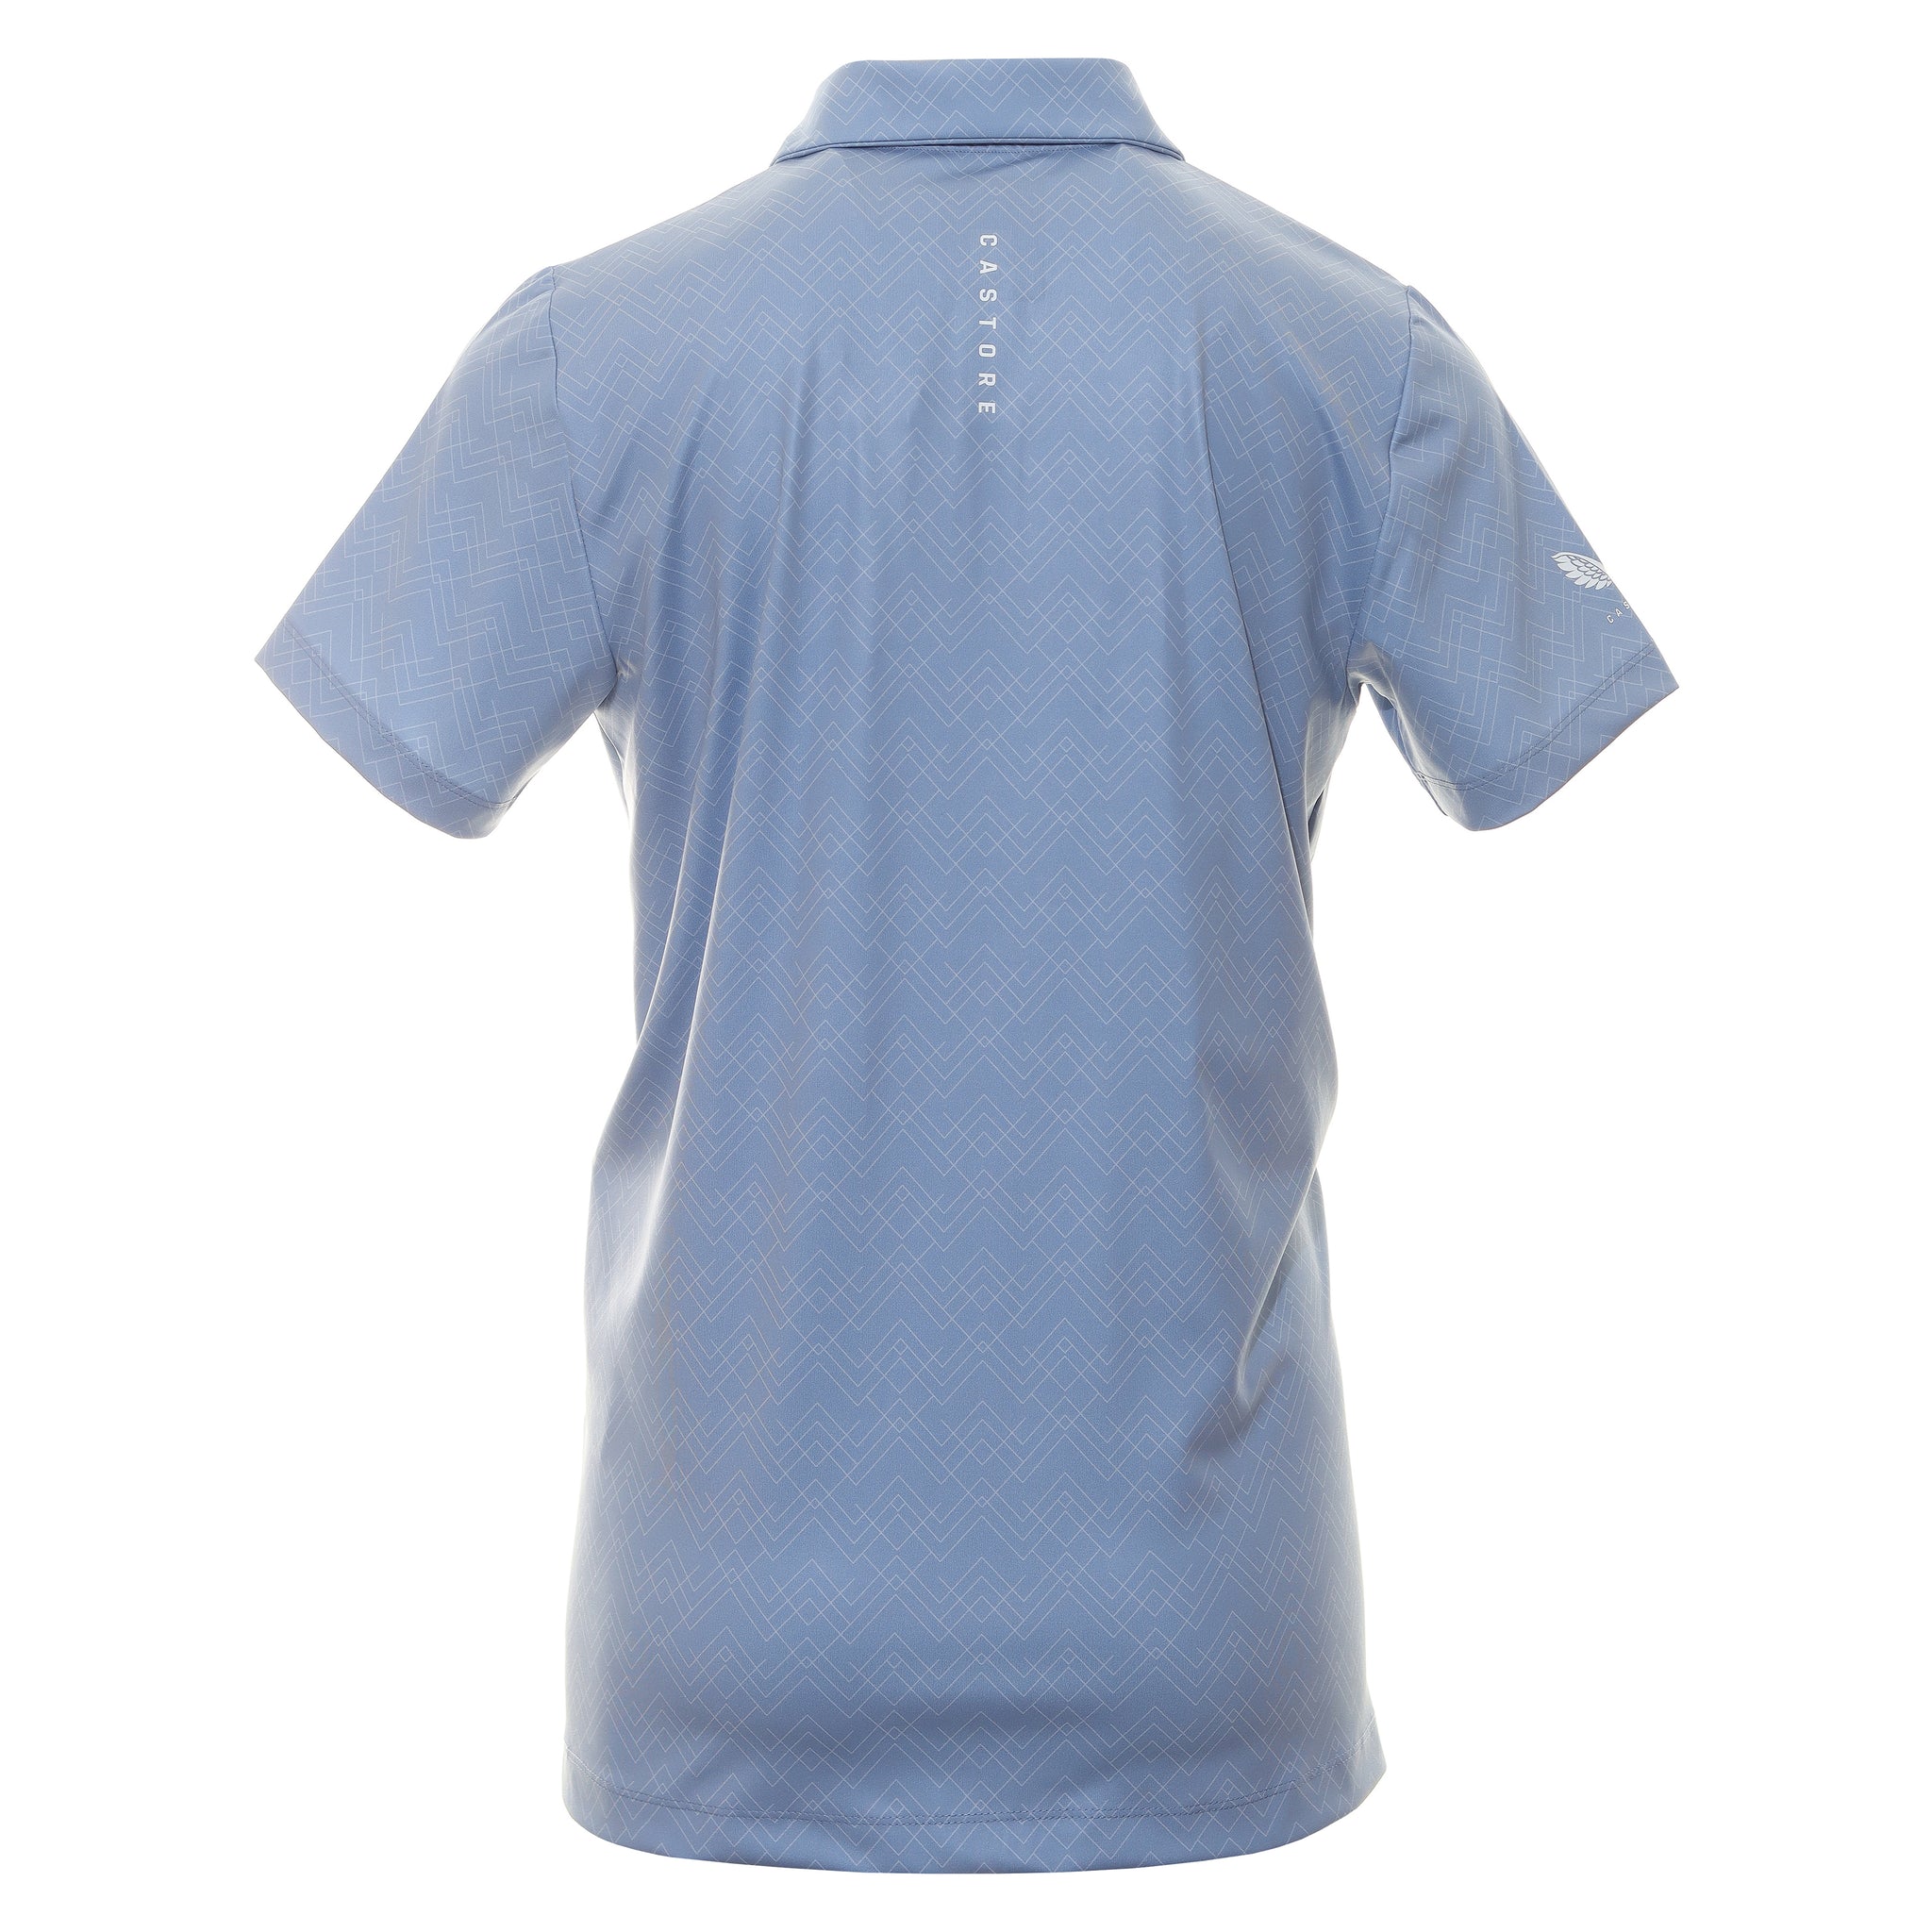 castore-printed-golf-polo-shirt-cma30366-sky